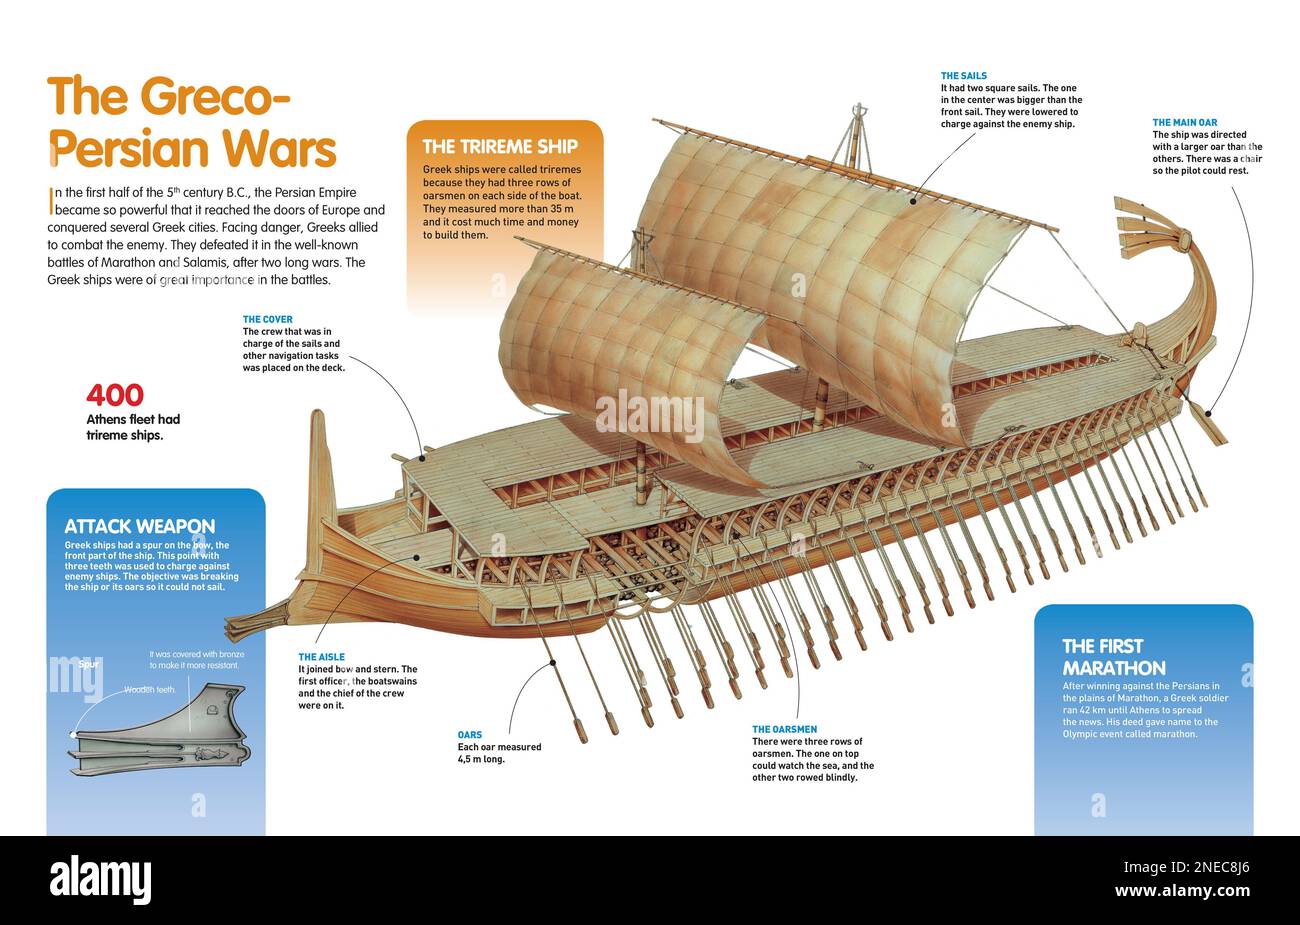 Infografik, die das Trireme-Schiff beschreibt, das die Griechen während der persischen Kriege gegen die Perser im 5. Jahrhundert v. Chr. benutzten [QuarkXPress (.qxp); Adobe InDesign (.indd); 4960x3188]. Stockfoto